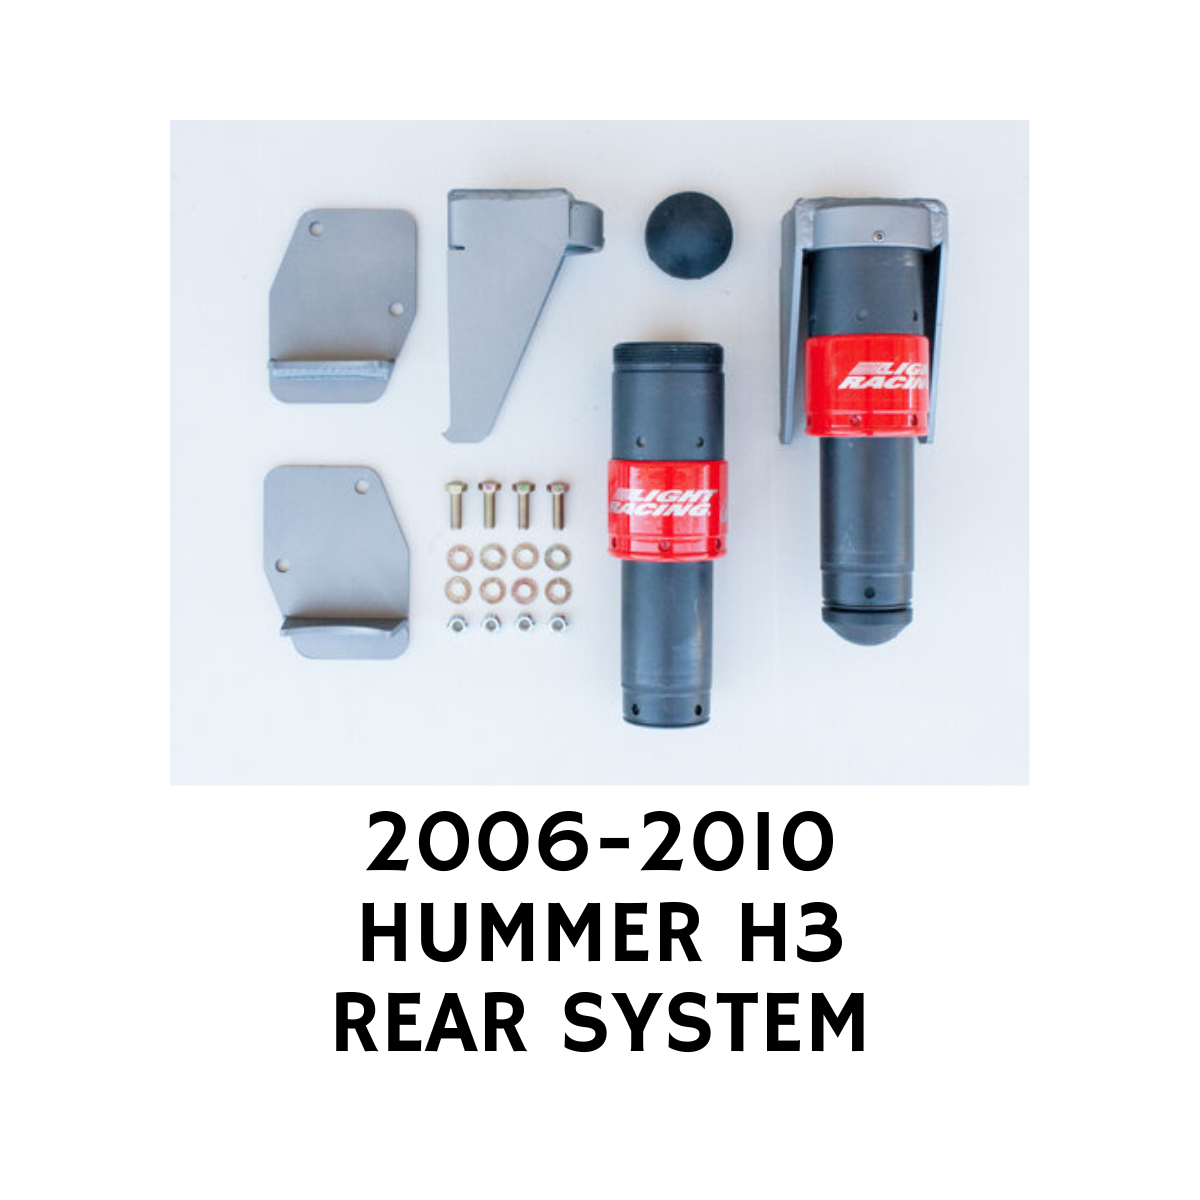 HUMMER H3 JOUNCESHOCK SYSTEM